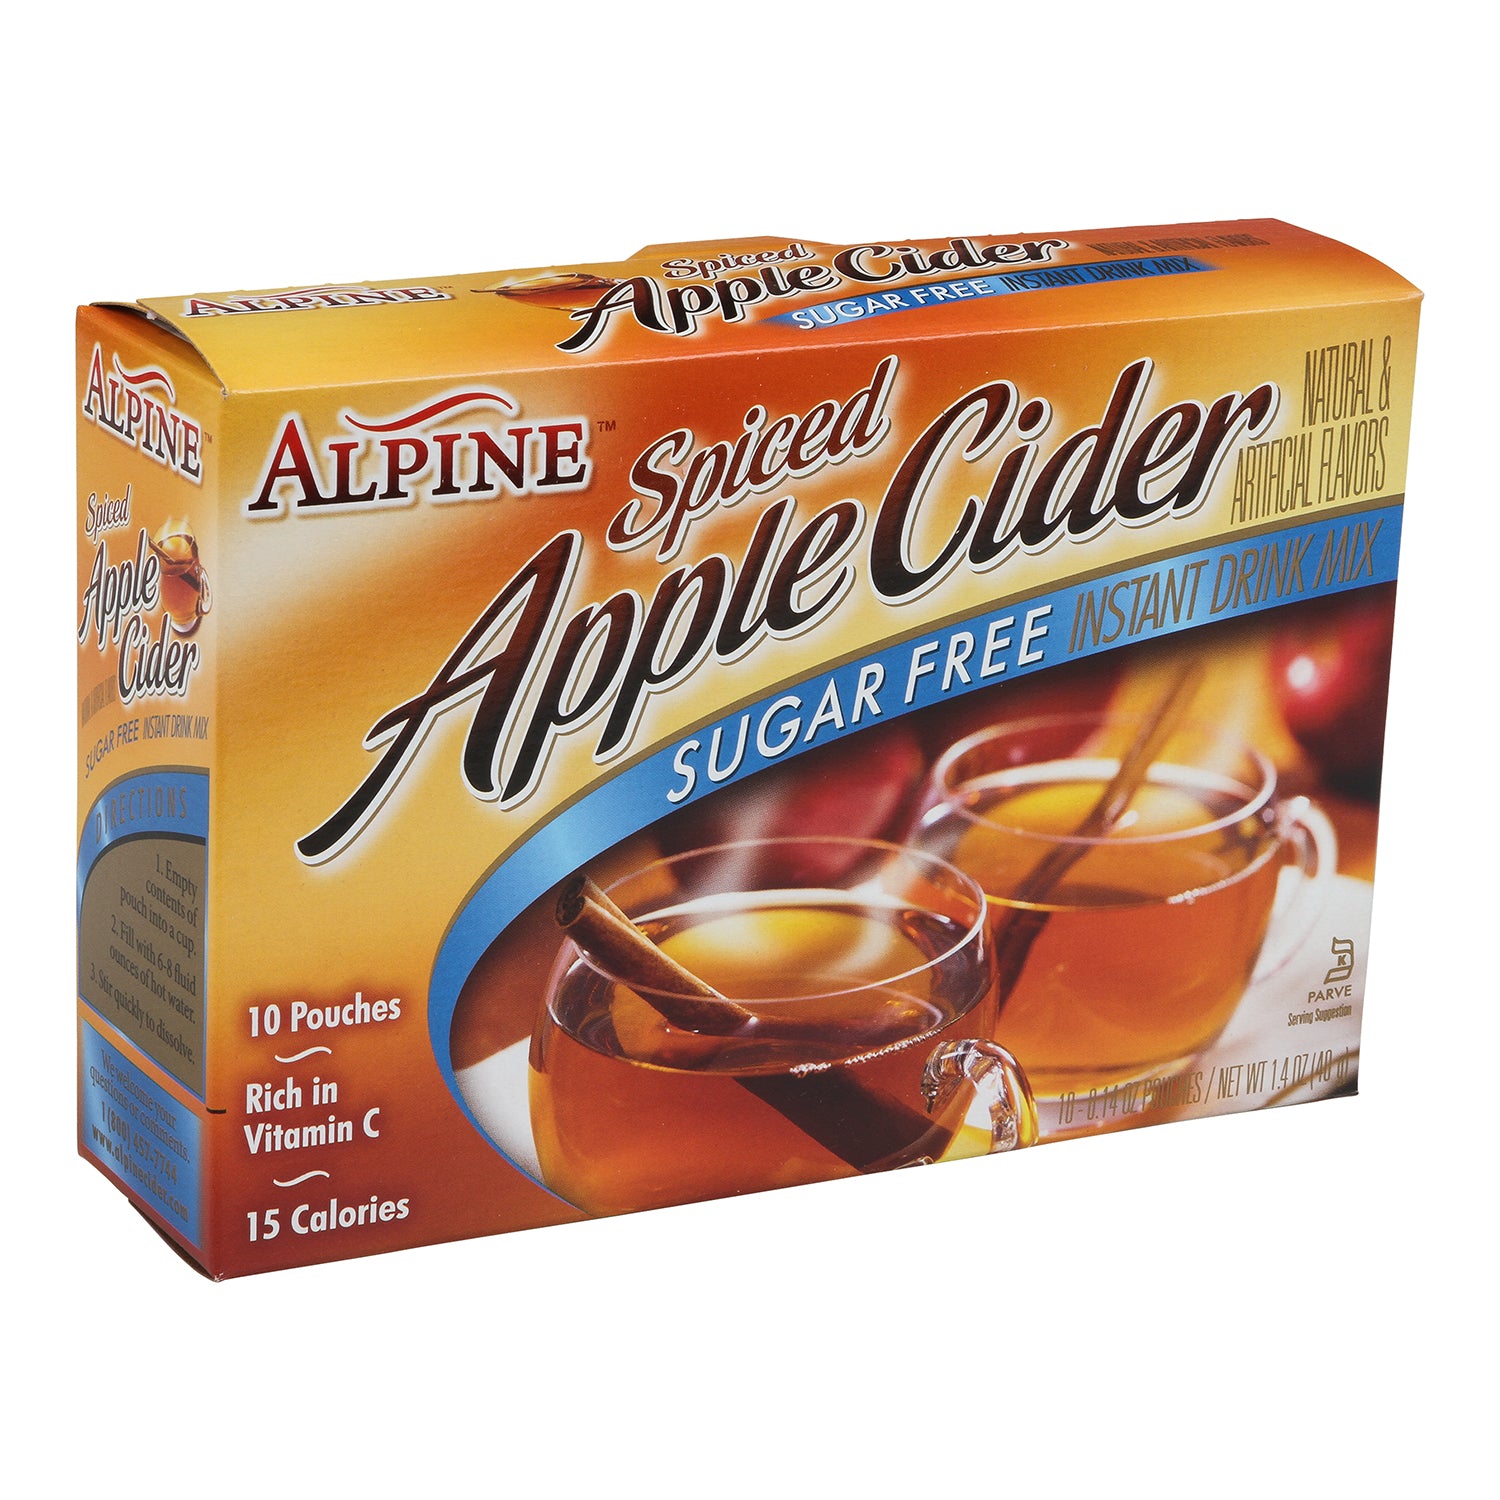 Alpine Sugar Free Spiced Cider Drink Mix